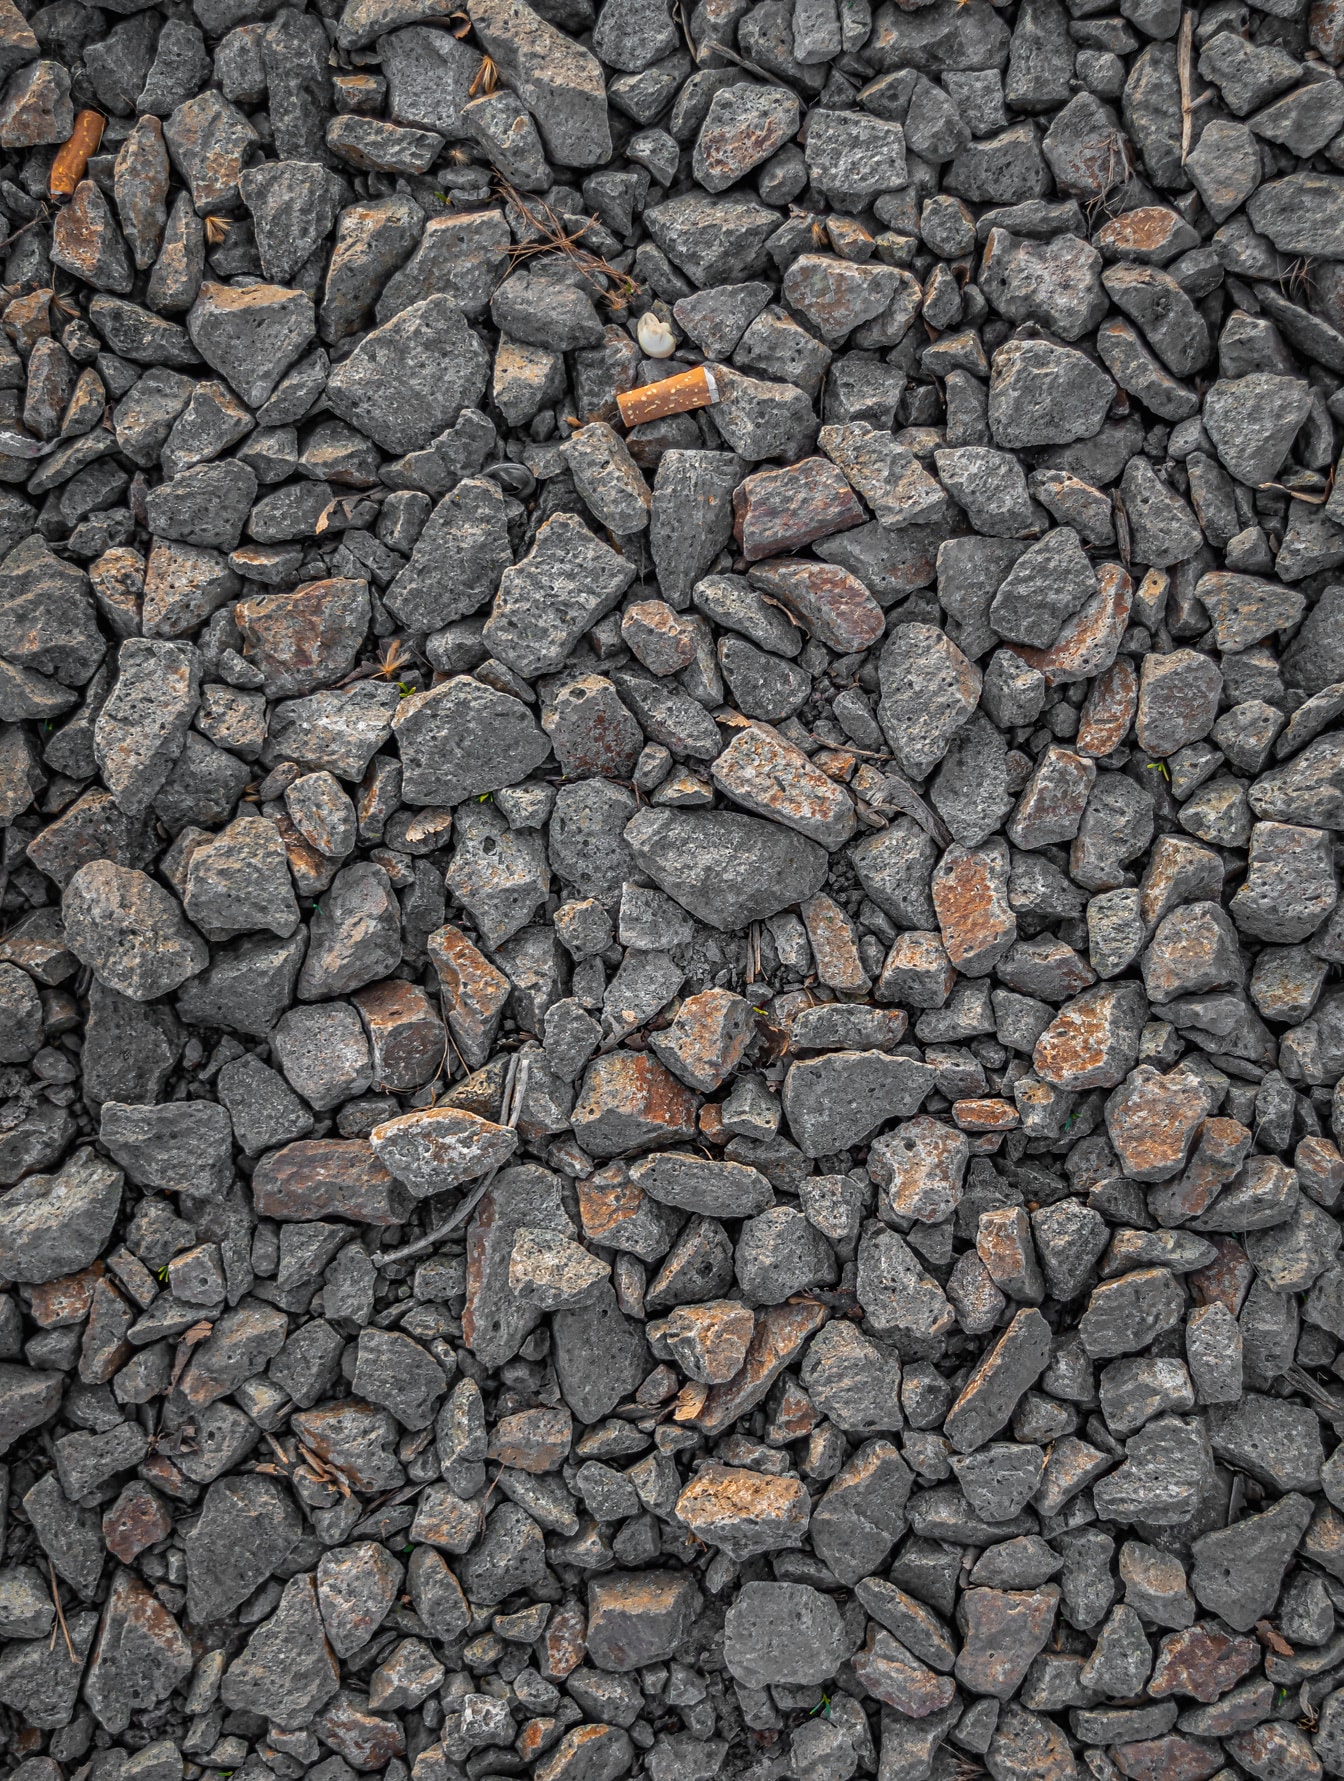 ก้อนกรวดหินแกรนิตสีเทาบนพื้นผิวพื้นดิน